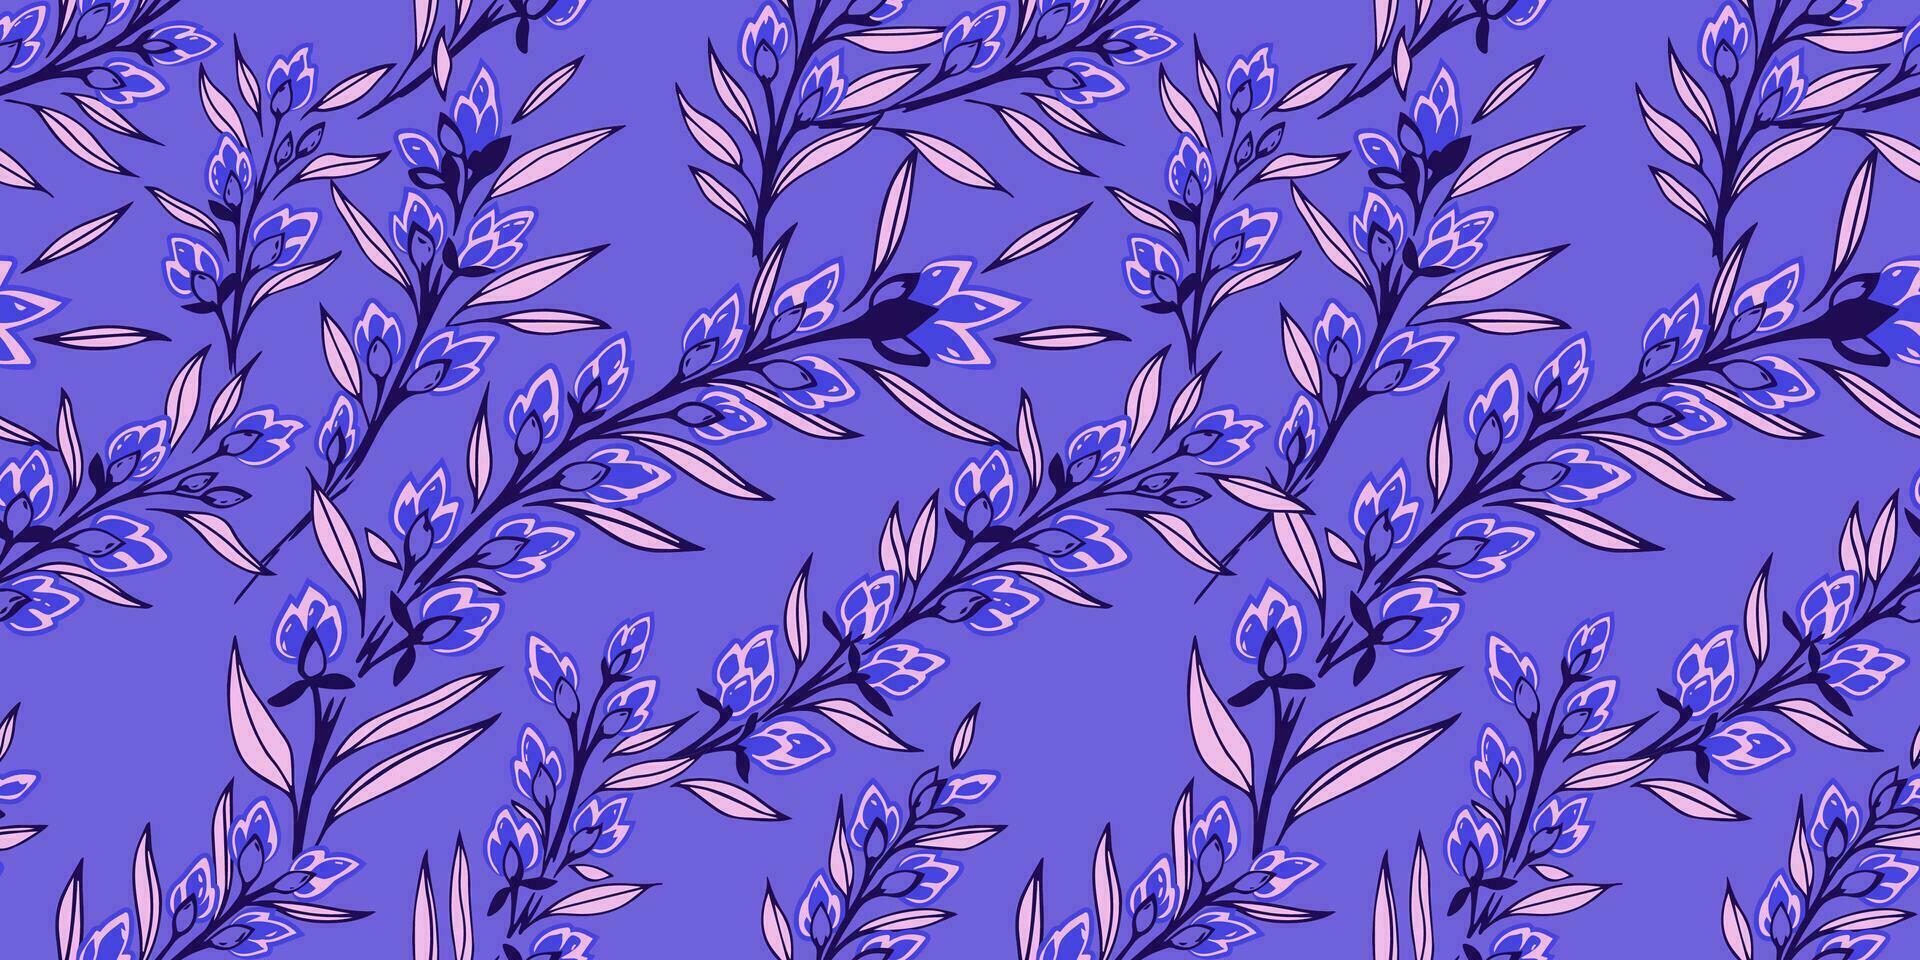 kreativ beschwingt Geäst Blätter mit Knospen Blumen verflochten im ein nahtlos Muster. Vektor Hand gezeichnet skizzieren. abstrakt Kunst Blumen- drucken auf ein Blau Hintergrund. Design zum Mode, Stoff, Hintergrund.